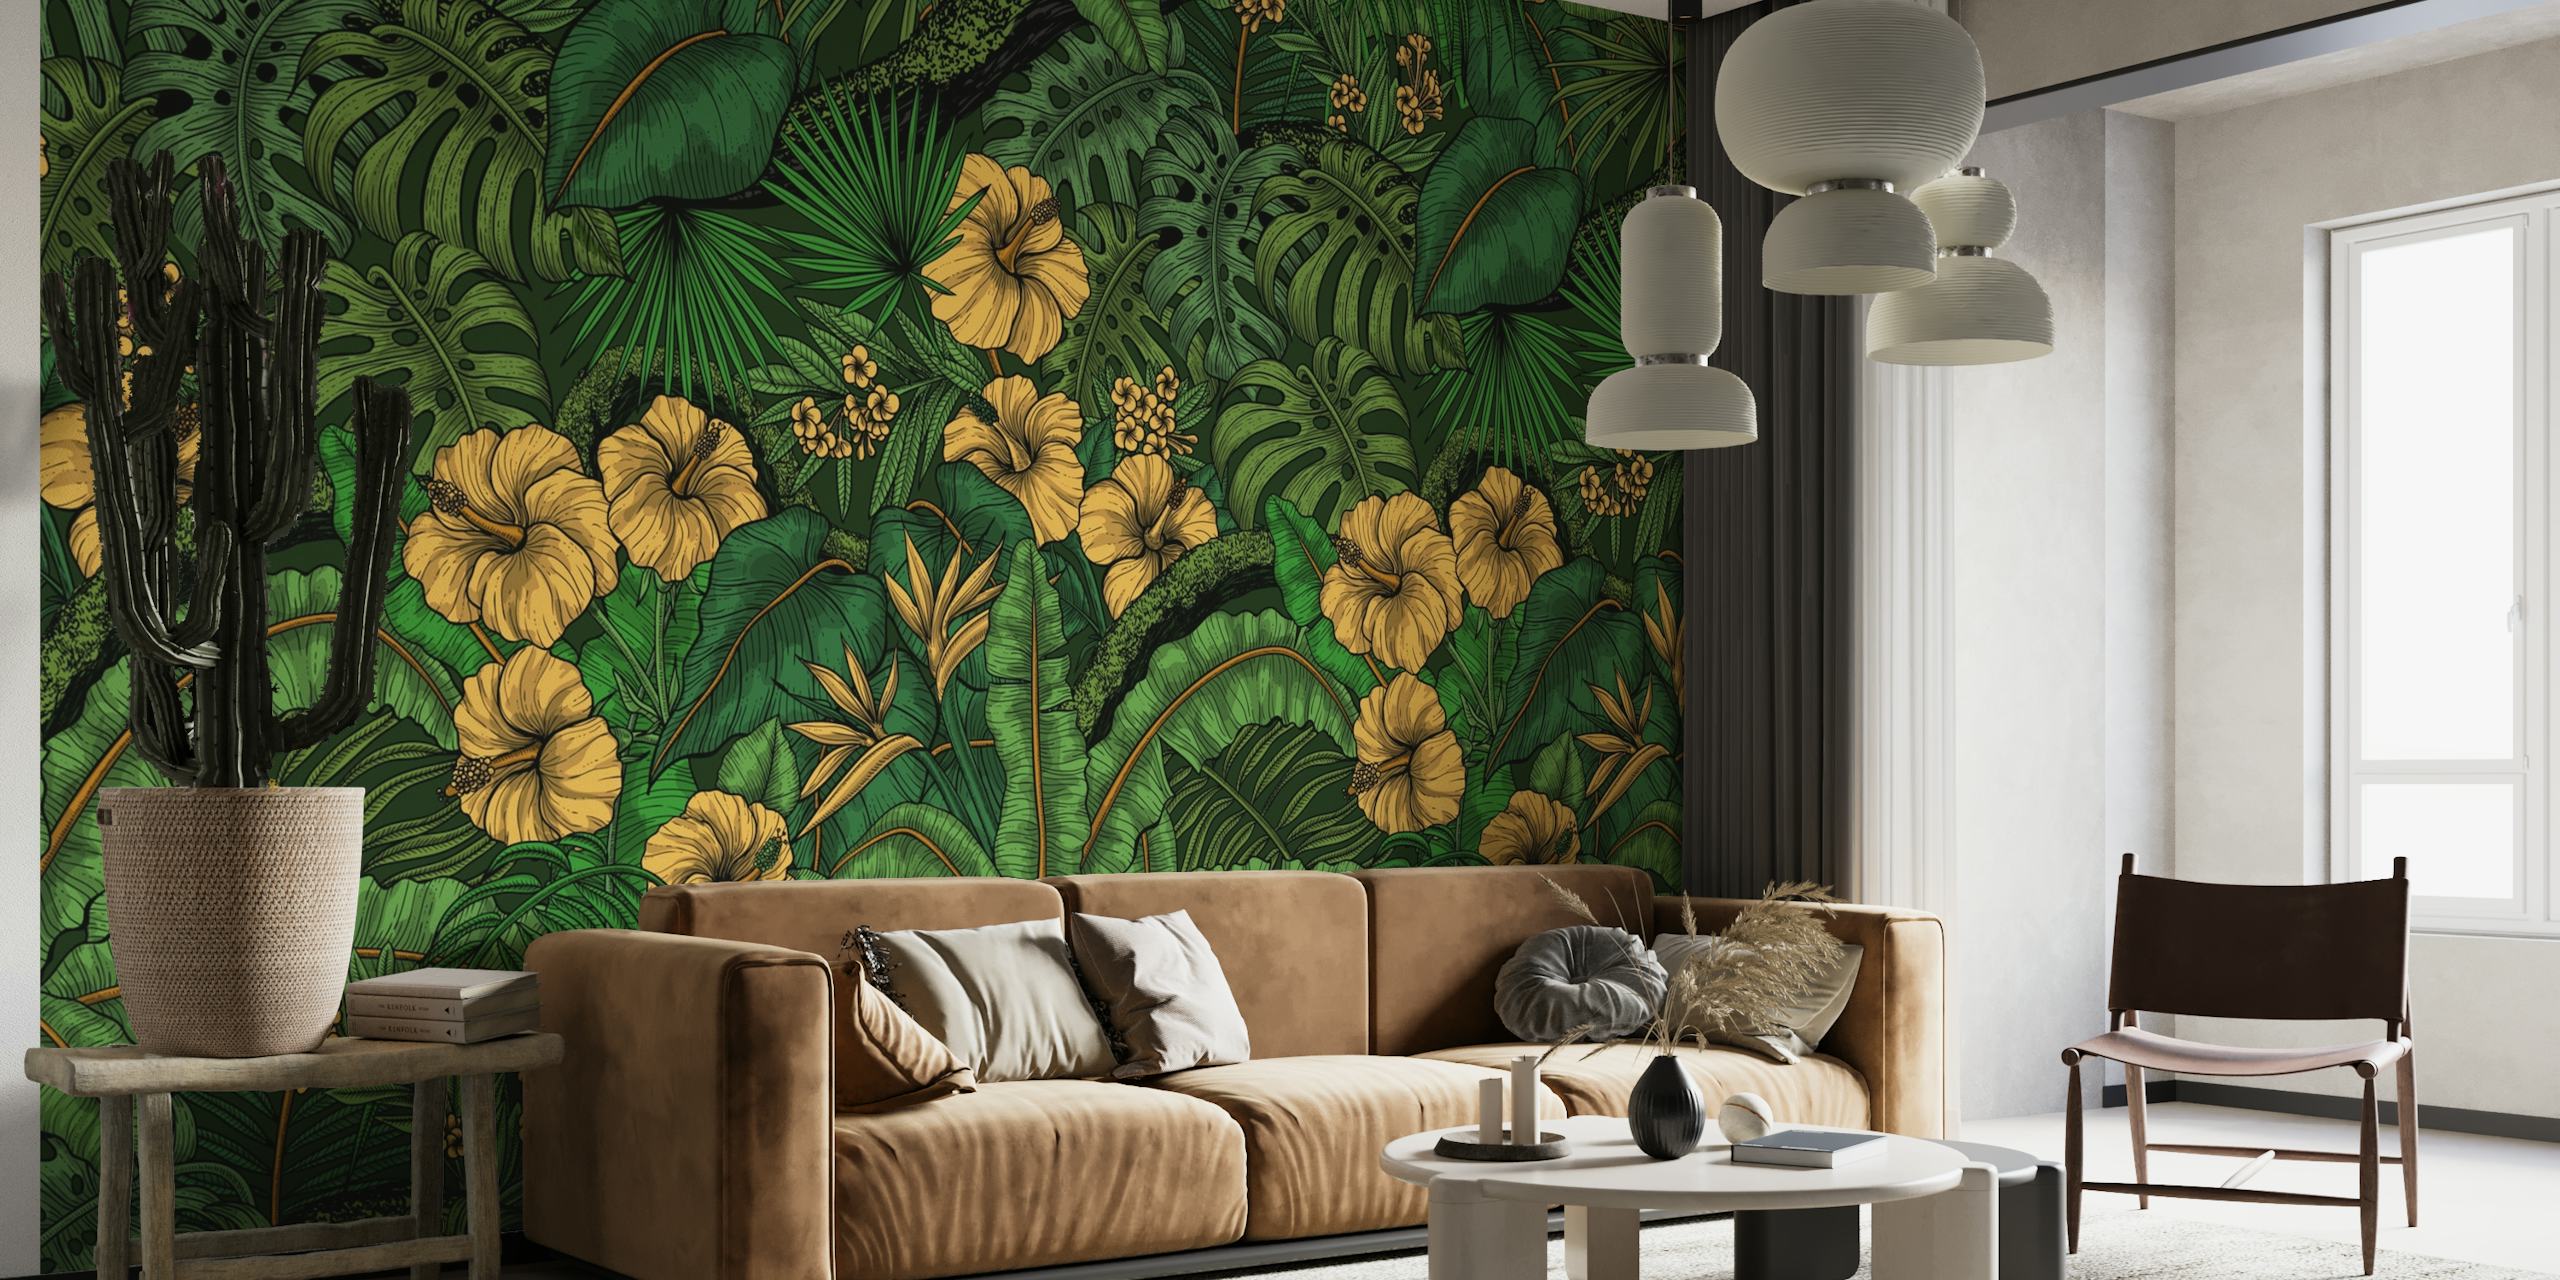 Fotomural vinílico de parede de flora tropical vibrante com vegetação exuberante e flores amarelas de hibisco.